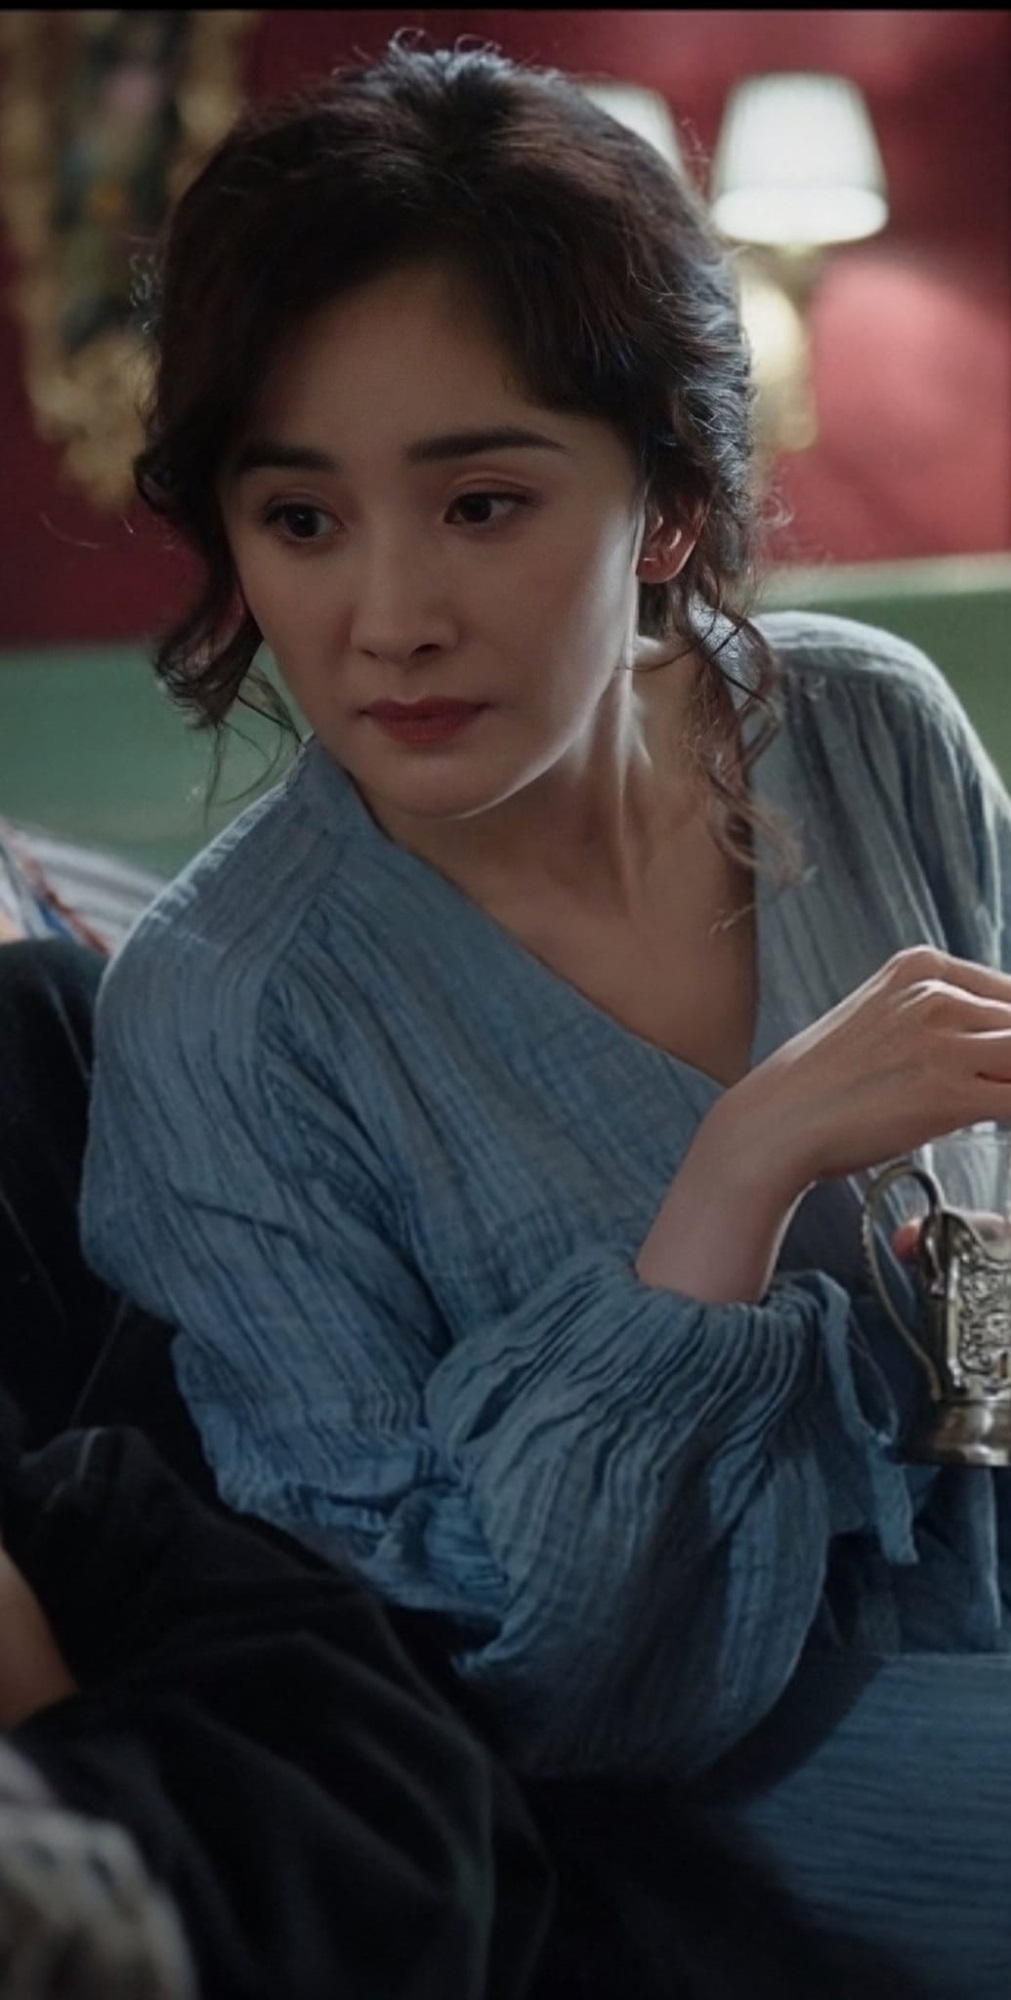 Dương Mịch có cảnh diễn xuất thần nhất sự nghiệp, nhưng vẫn gây tranh cãi vì 'gương mặt biến dạng' - Ảnh 2